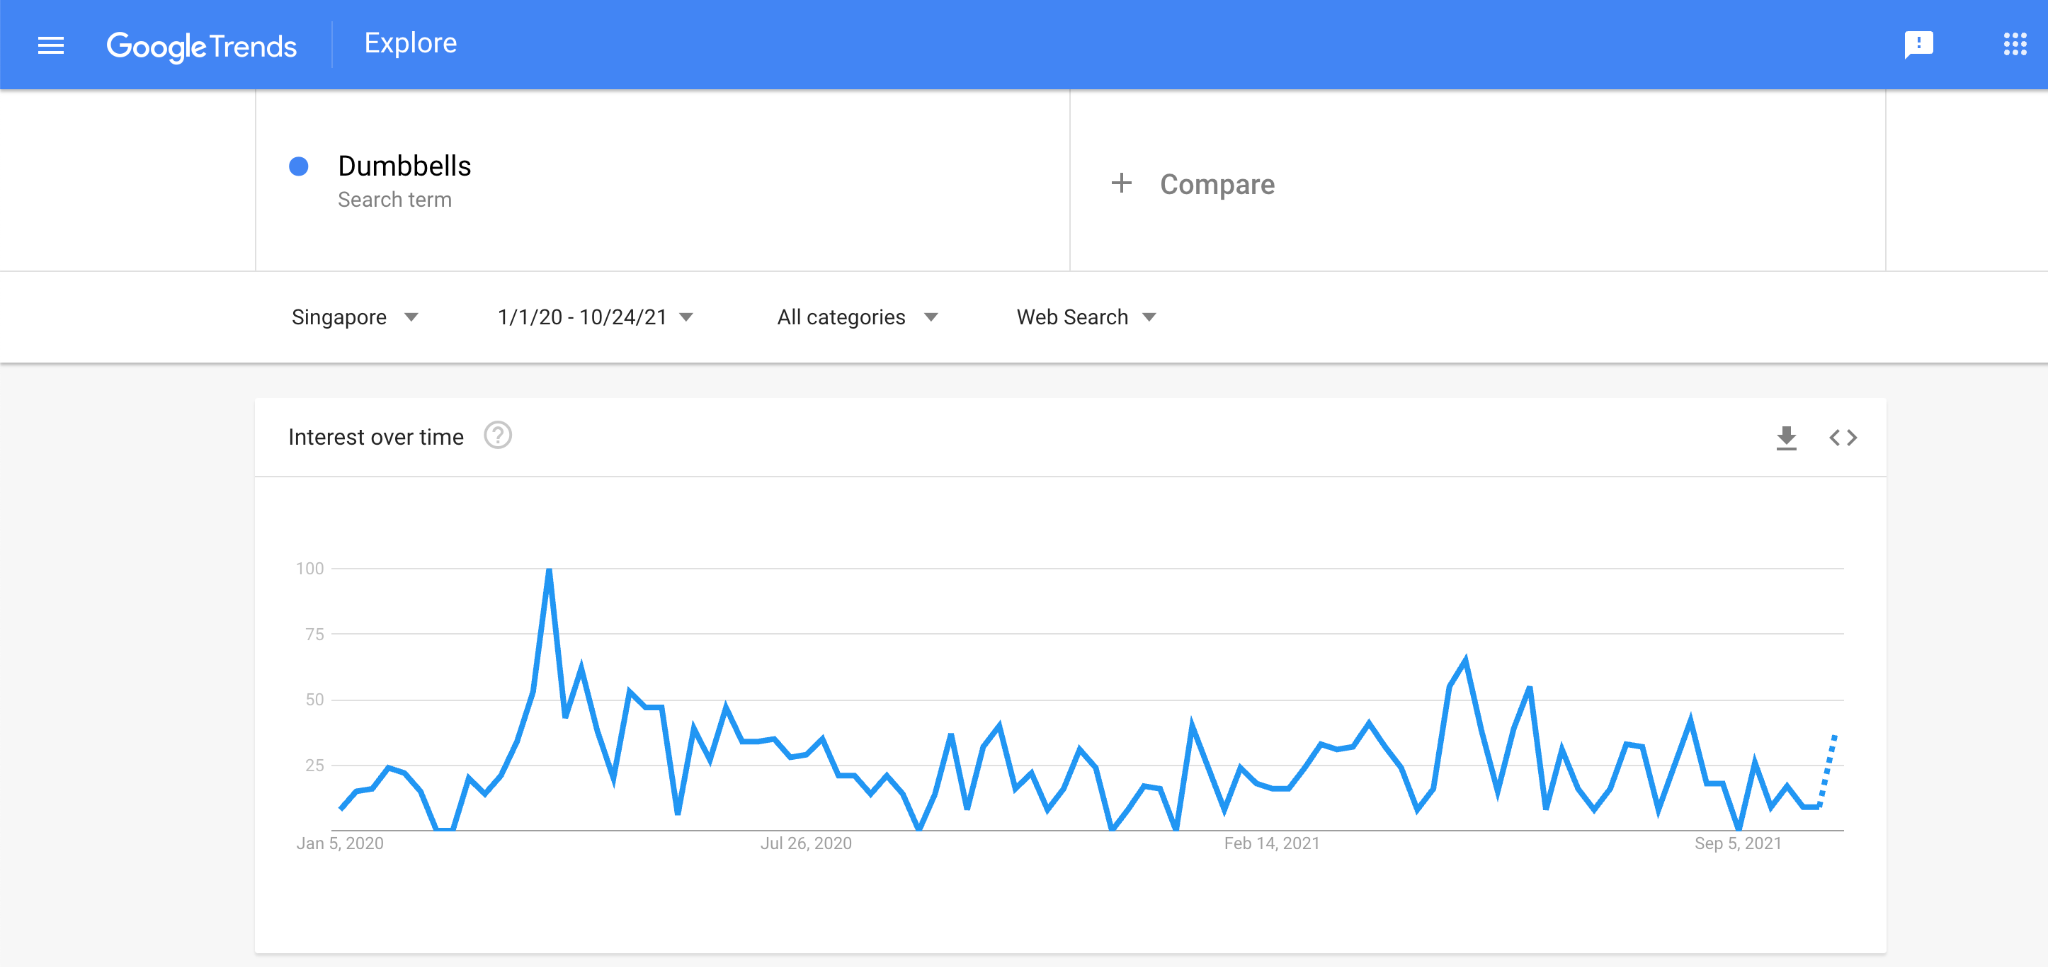 Google Trends Data on Dumbbells